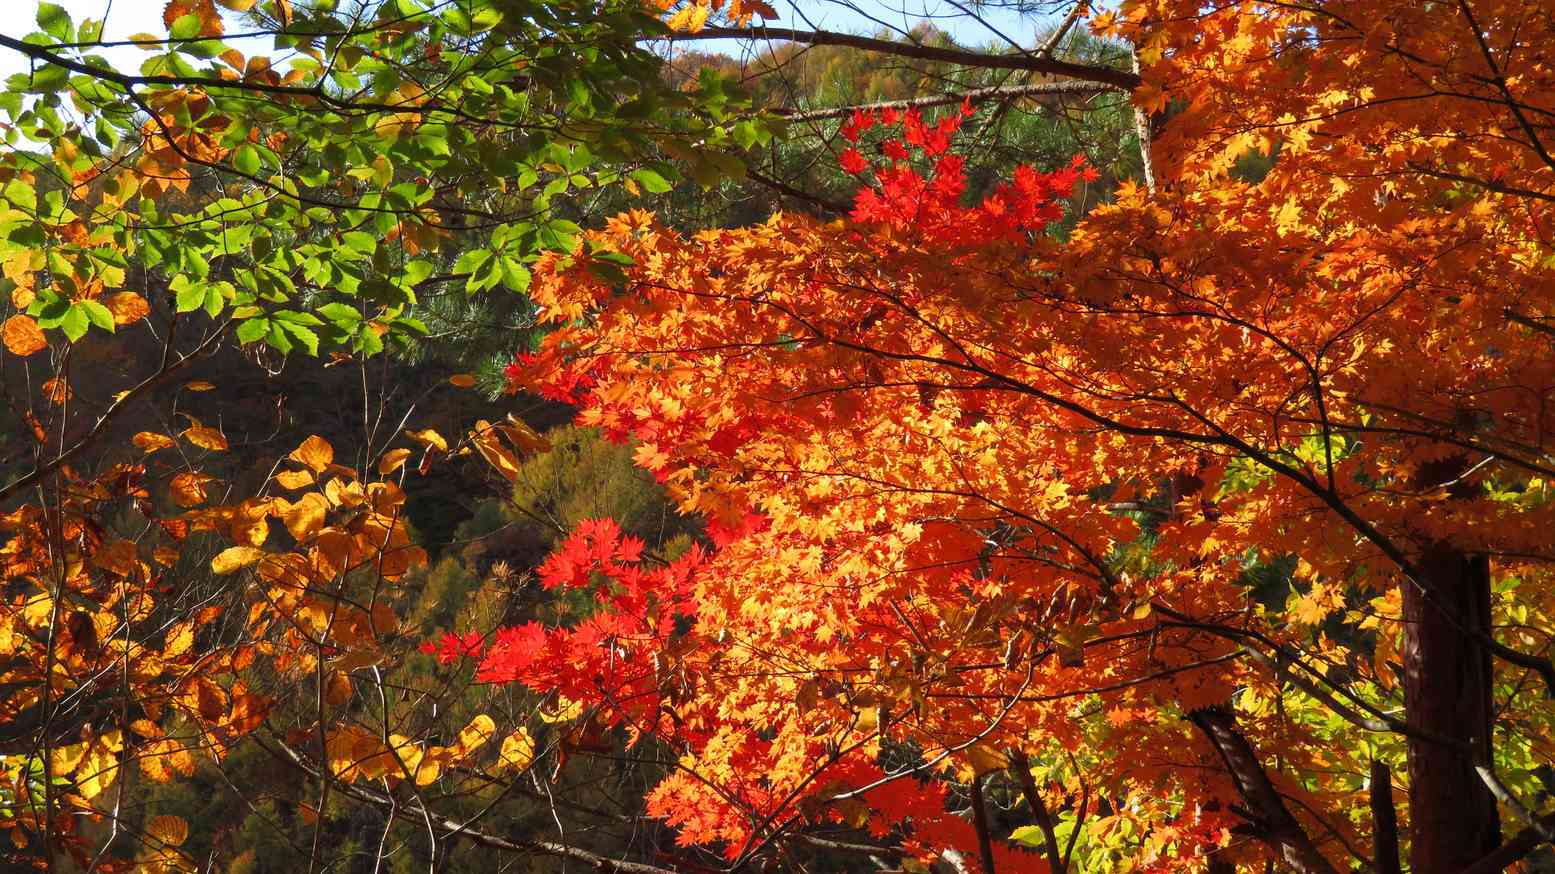 22 今年の秋は野反湖で紅葉もみじ狩りをしよう 近くに温泉もあります 暮らし の